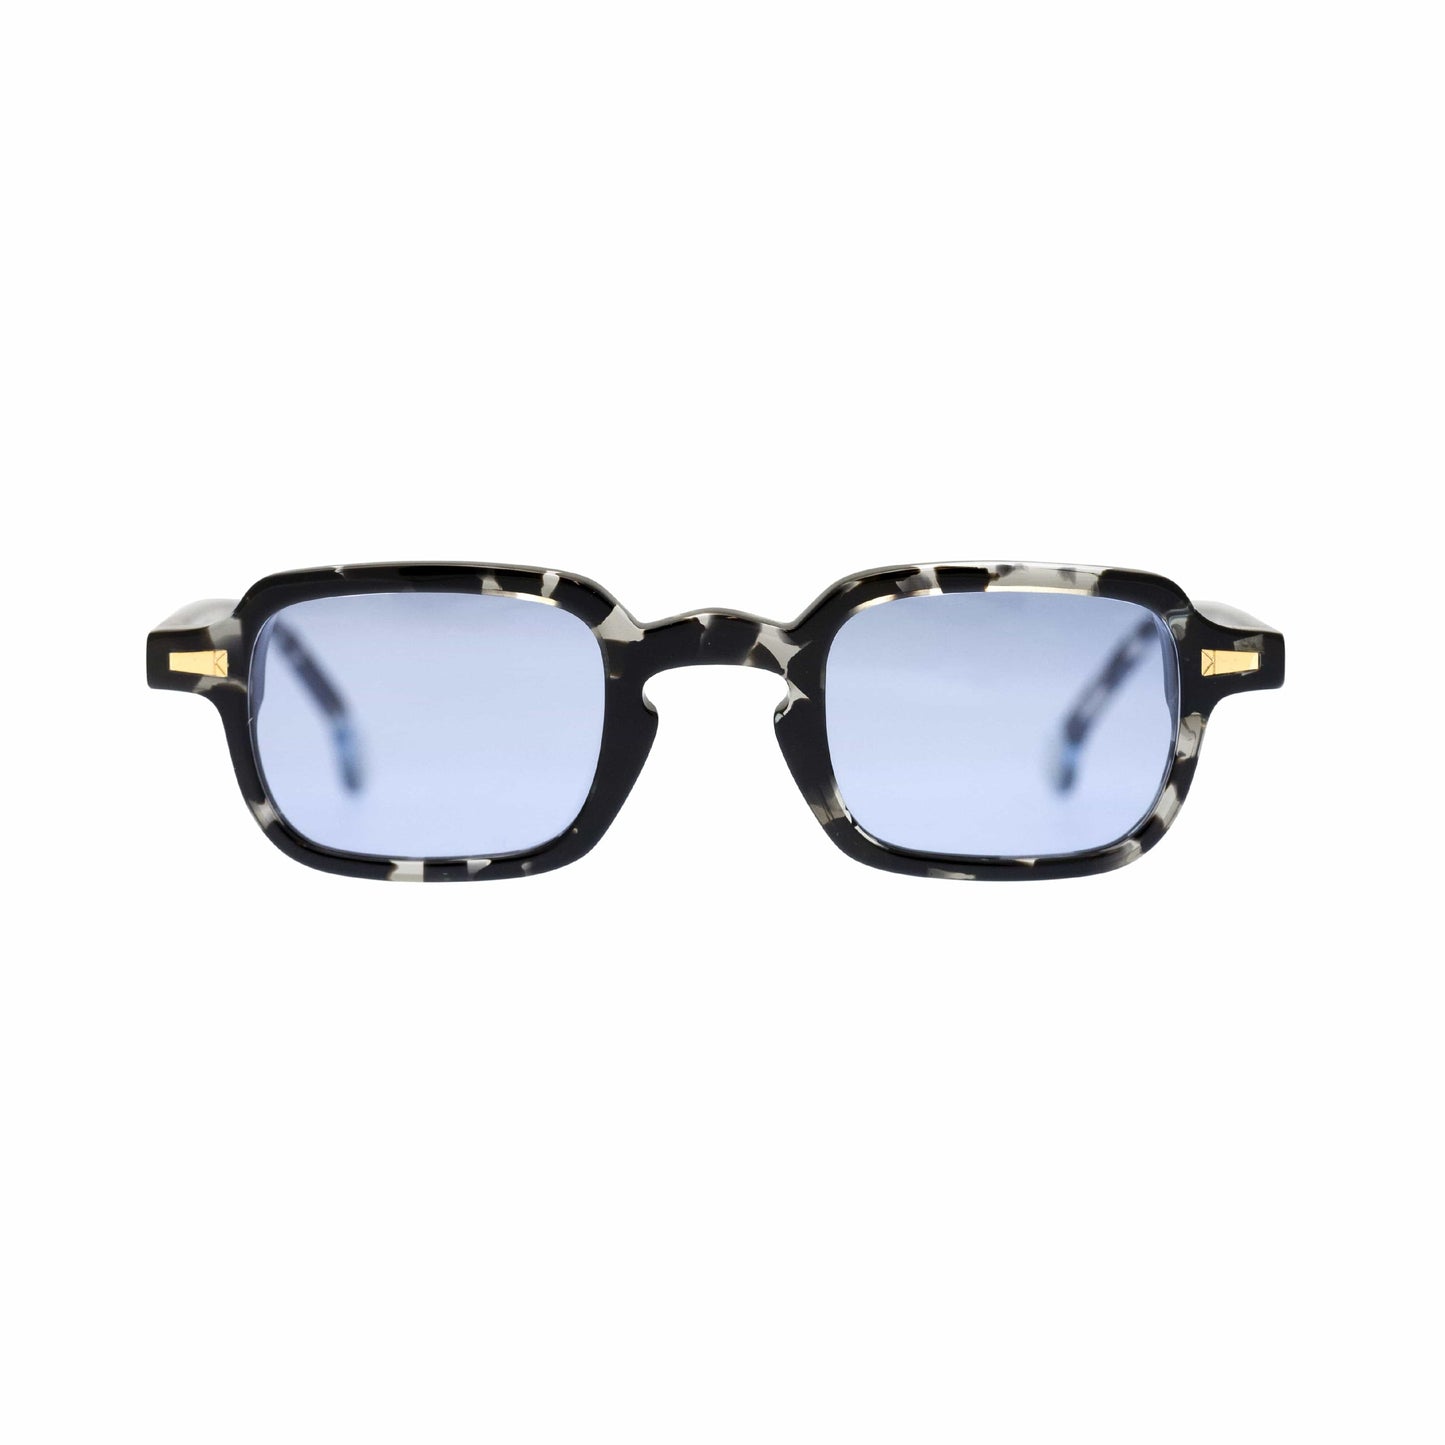 Kyme Occhiali da sole Camouflage nero - blu Kyme Gigi: occhiale da sole rettangolare